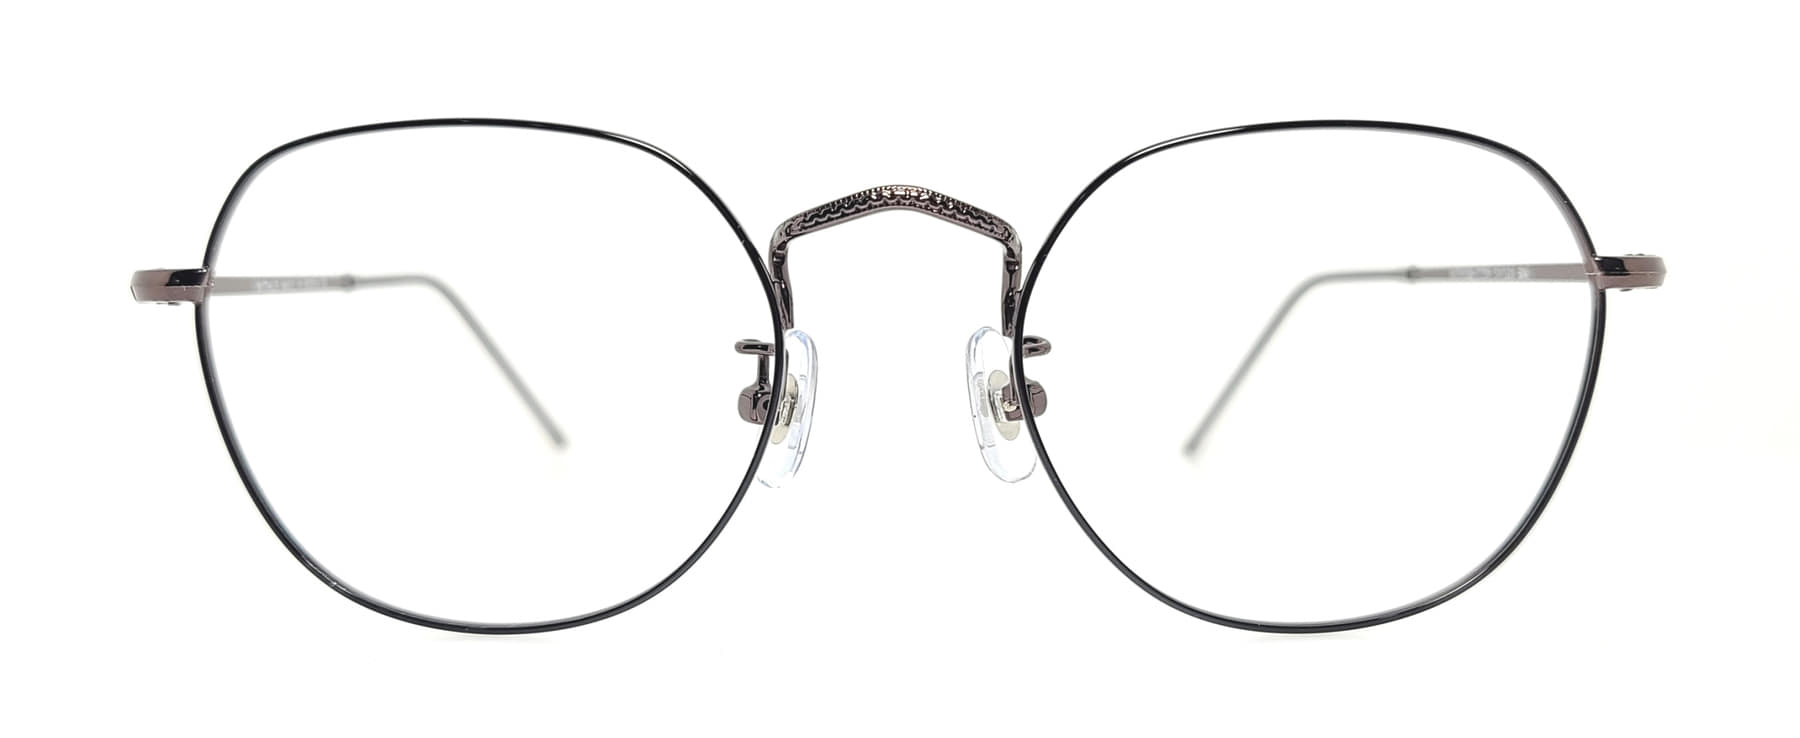 WITHUS-7381, Korean glasses, sunglasses, eyeglasses, glasses